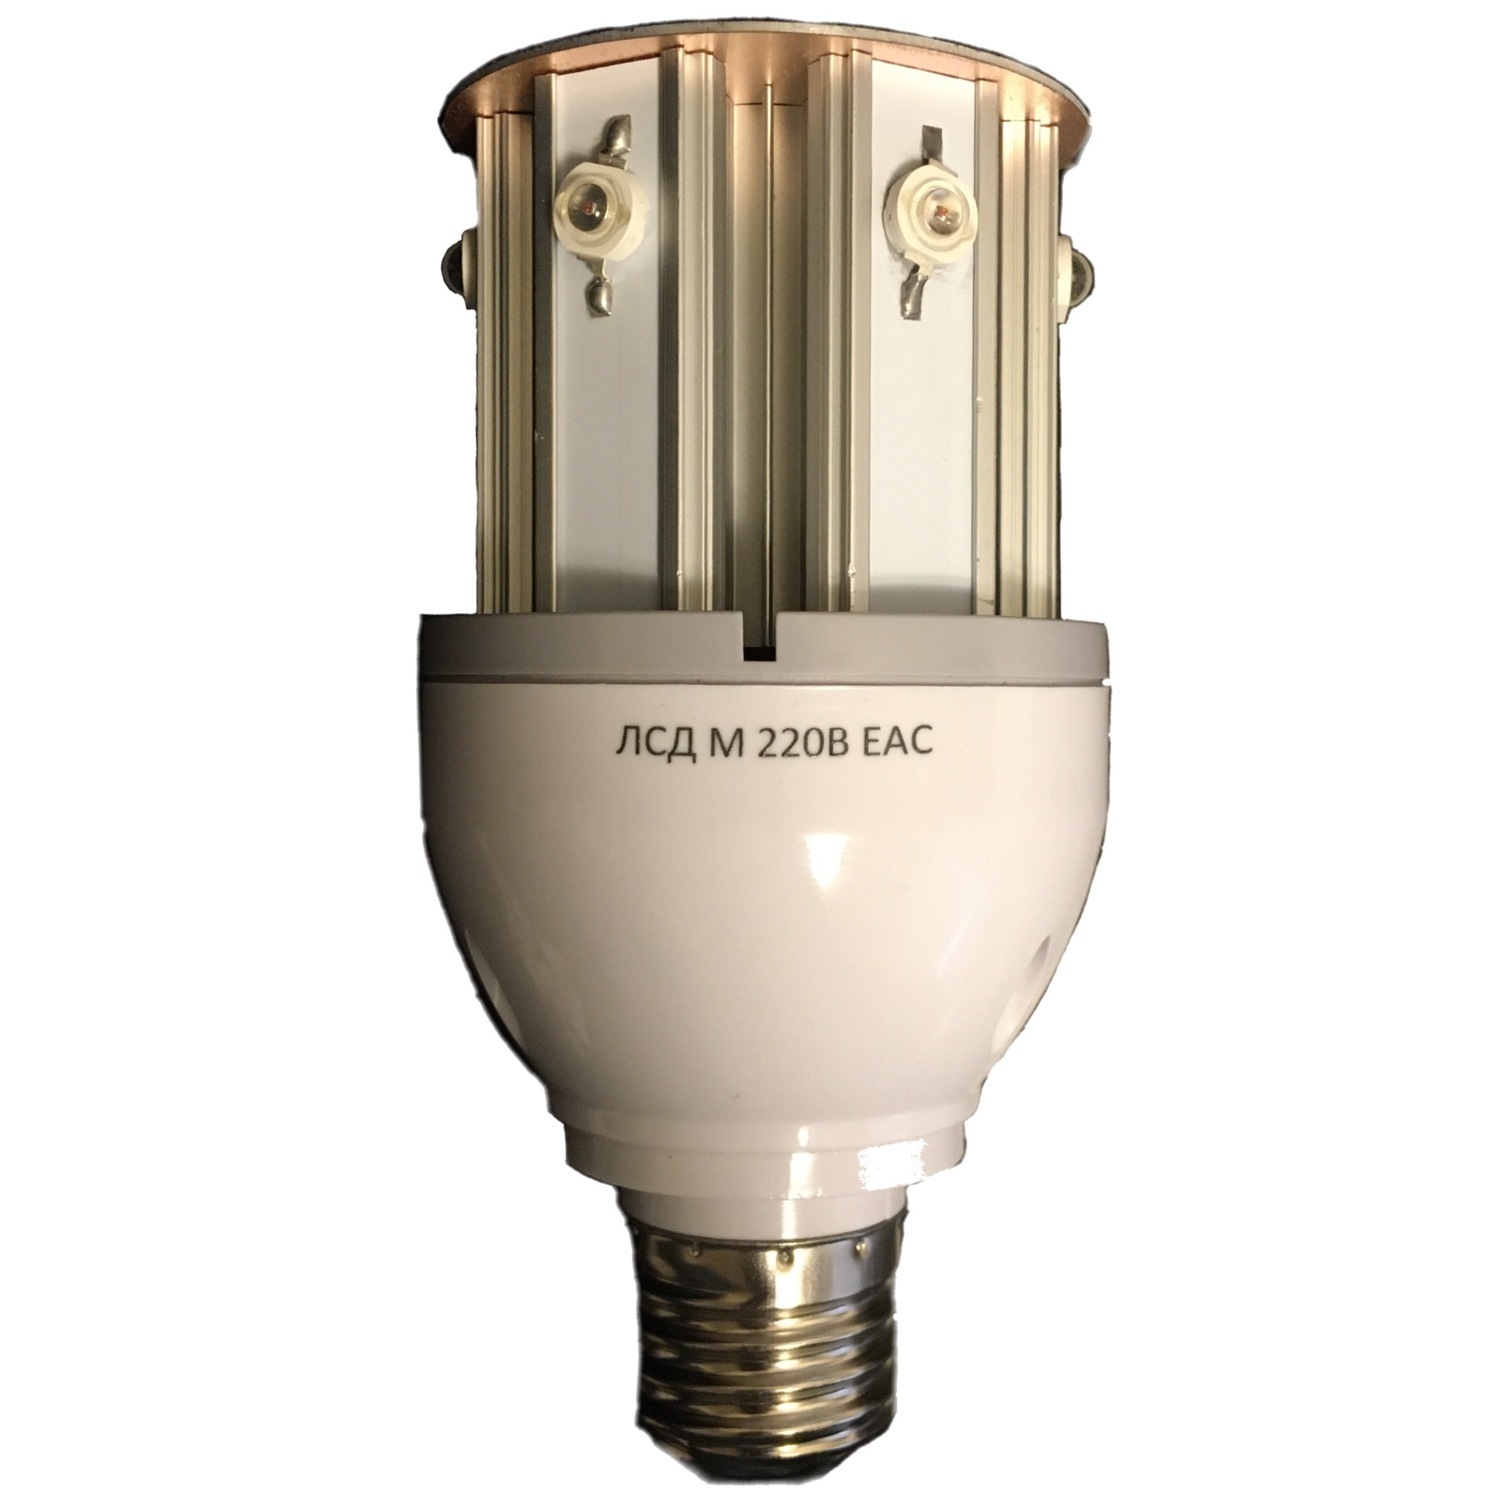 Лампа светодиодная ЛСД М 220В (220V, 35 Кд, 6 Вт) для ЗОМ и СДЗО-05 .